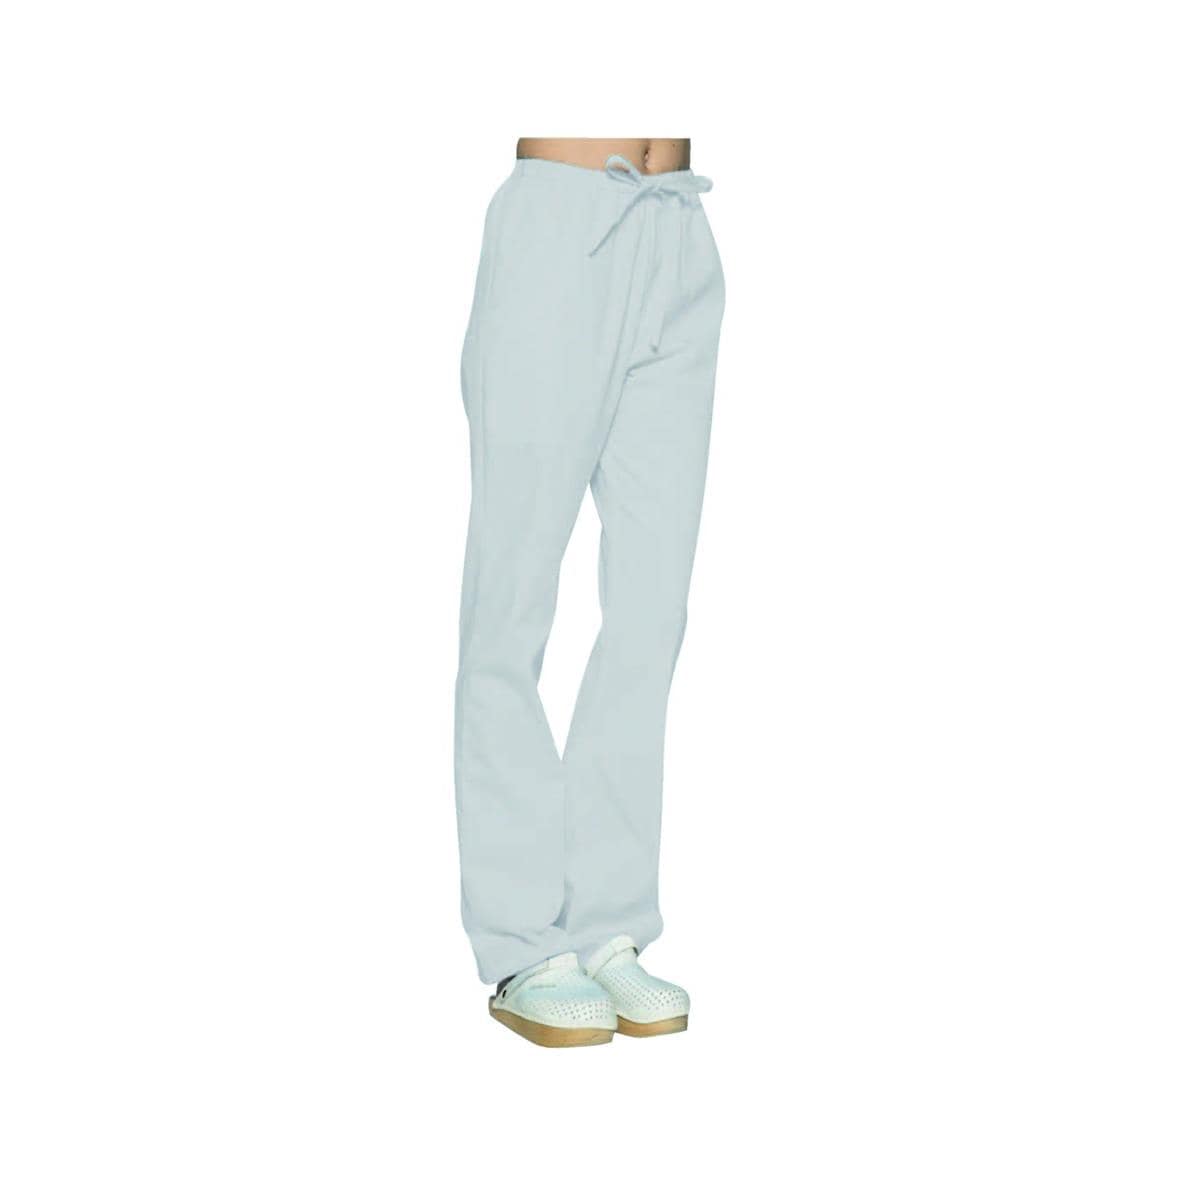 Pantalon Mixte SELEKTO - Gris clair - Taille XS